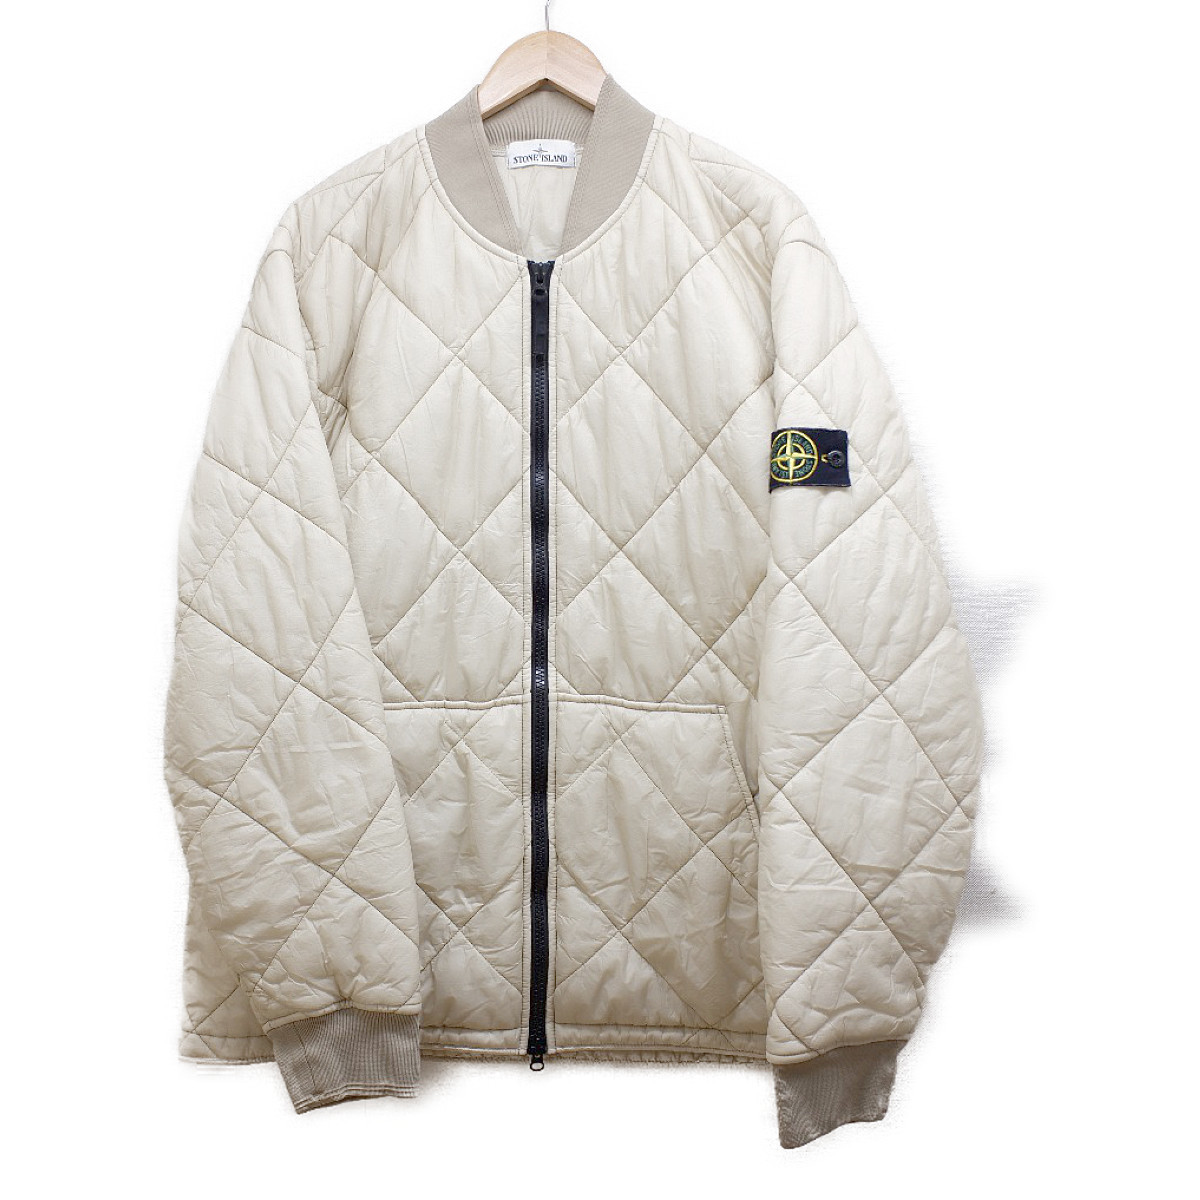 ストーンアイランドの6915Q1424 ナイロン 中綿入り キルティング ジャケットの買取実績です。